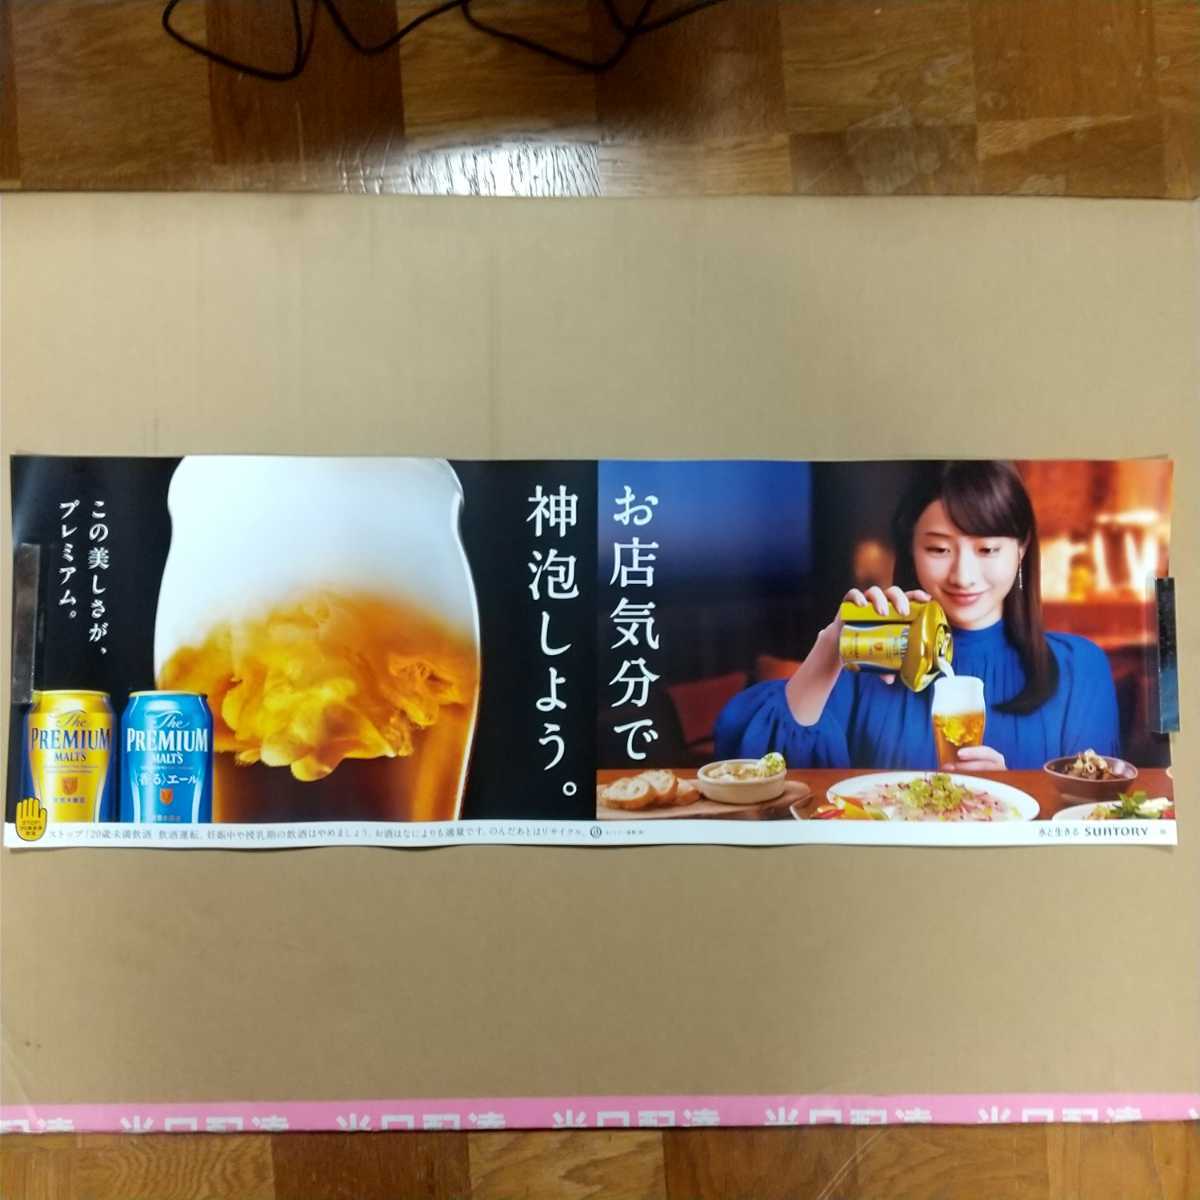  Ishihara Satomi постер premium morutsu не продается не использовался 